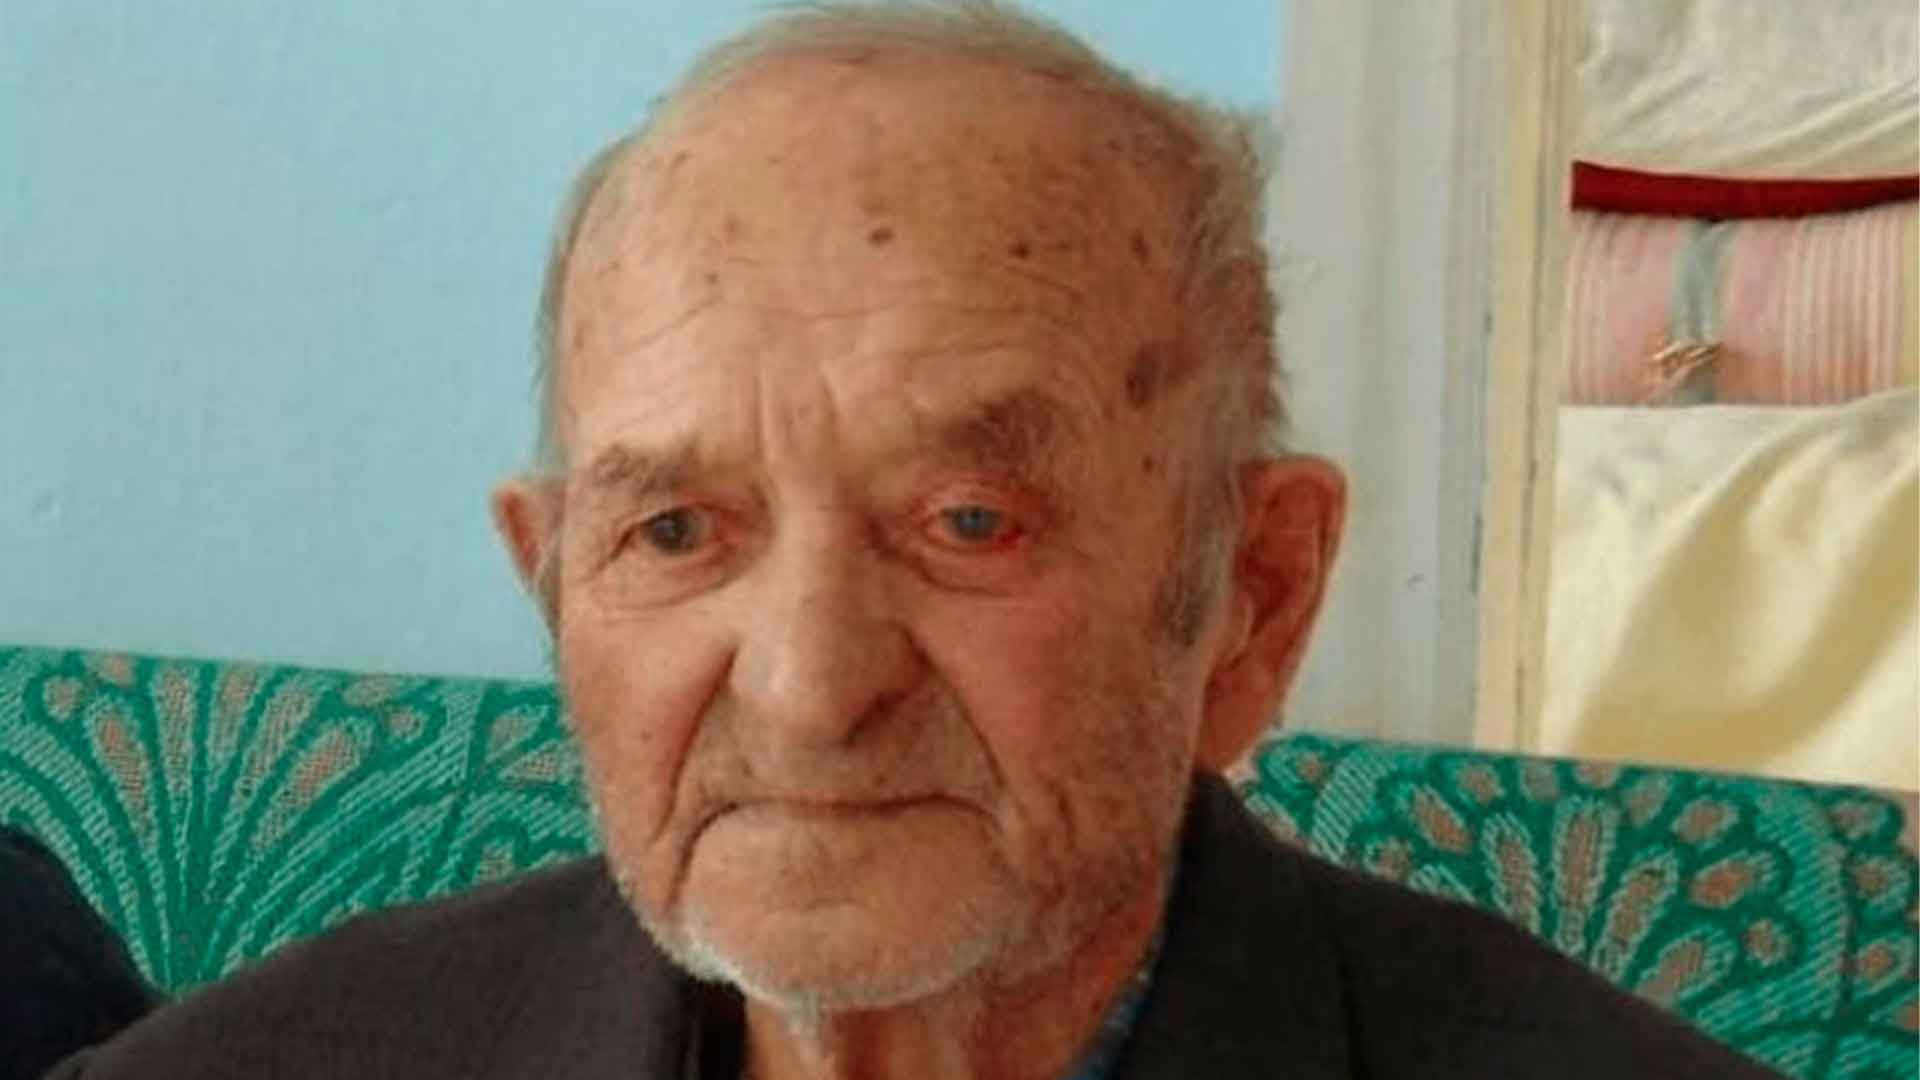 Dailystorm - СКР возбудил дело после зверского убийства 100-летнего ветерана ВОВ в Башкирии